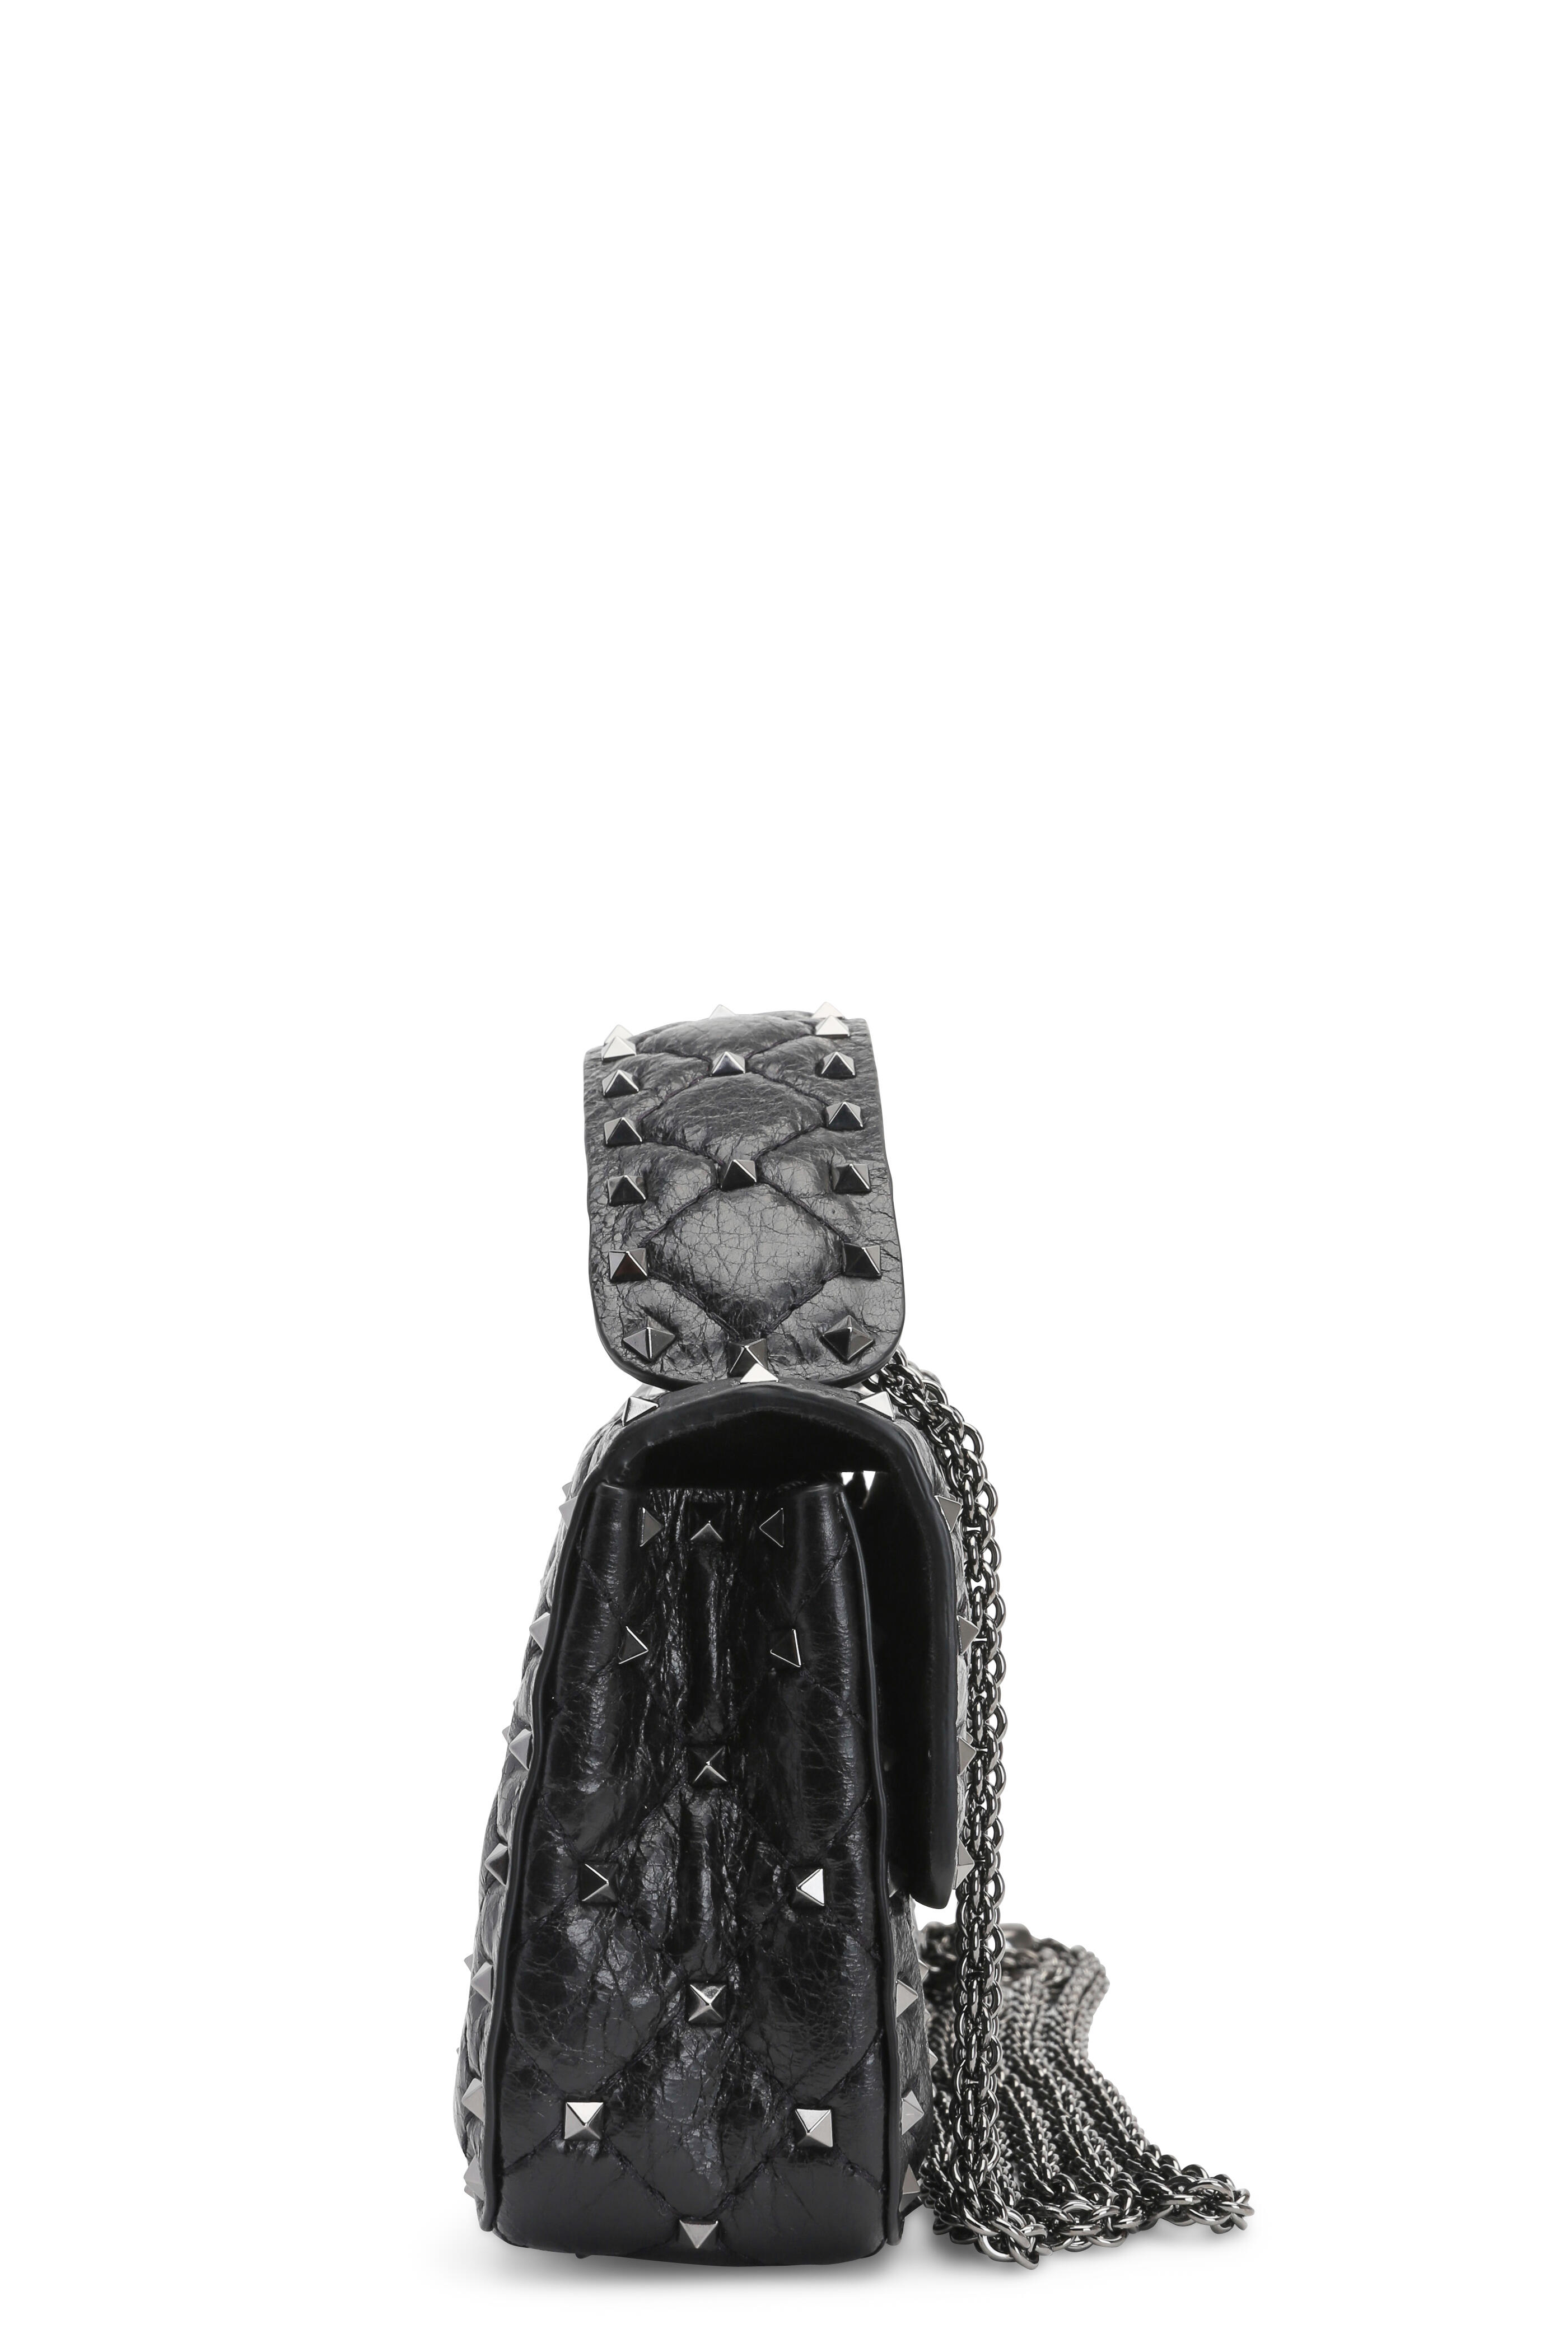 Rockstud Small Leather Shoulder Bag In Black